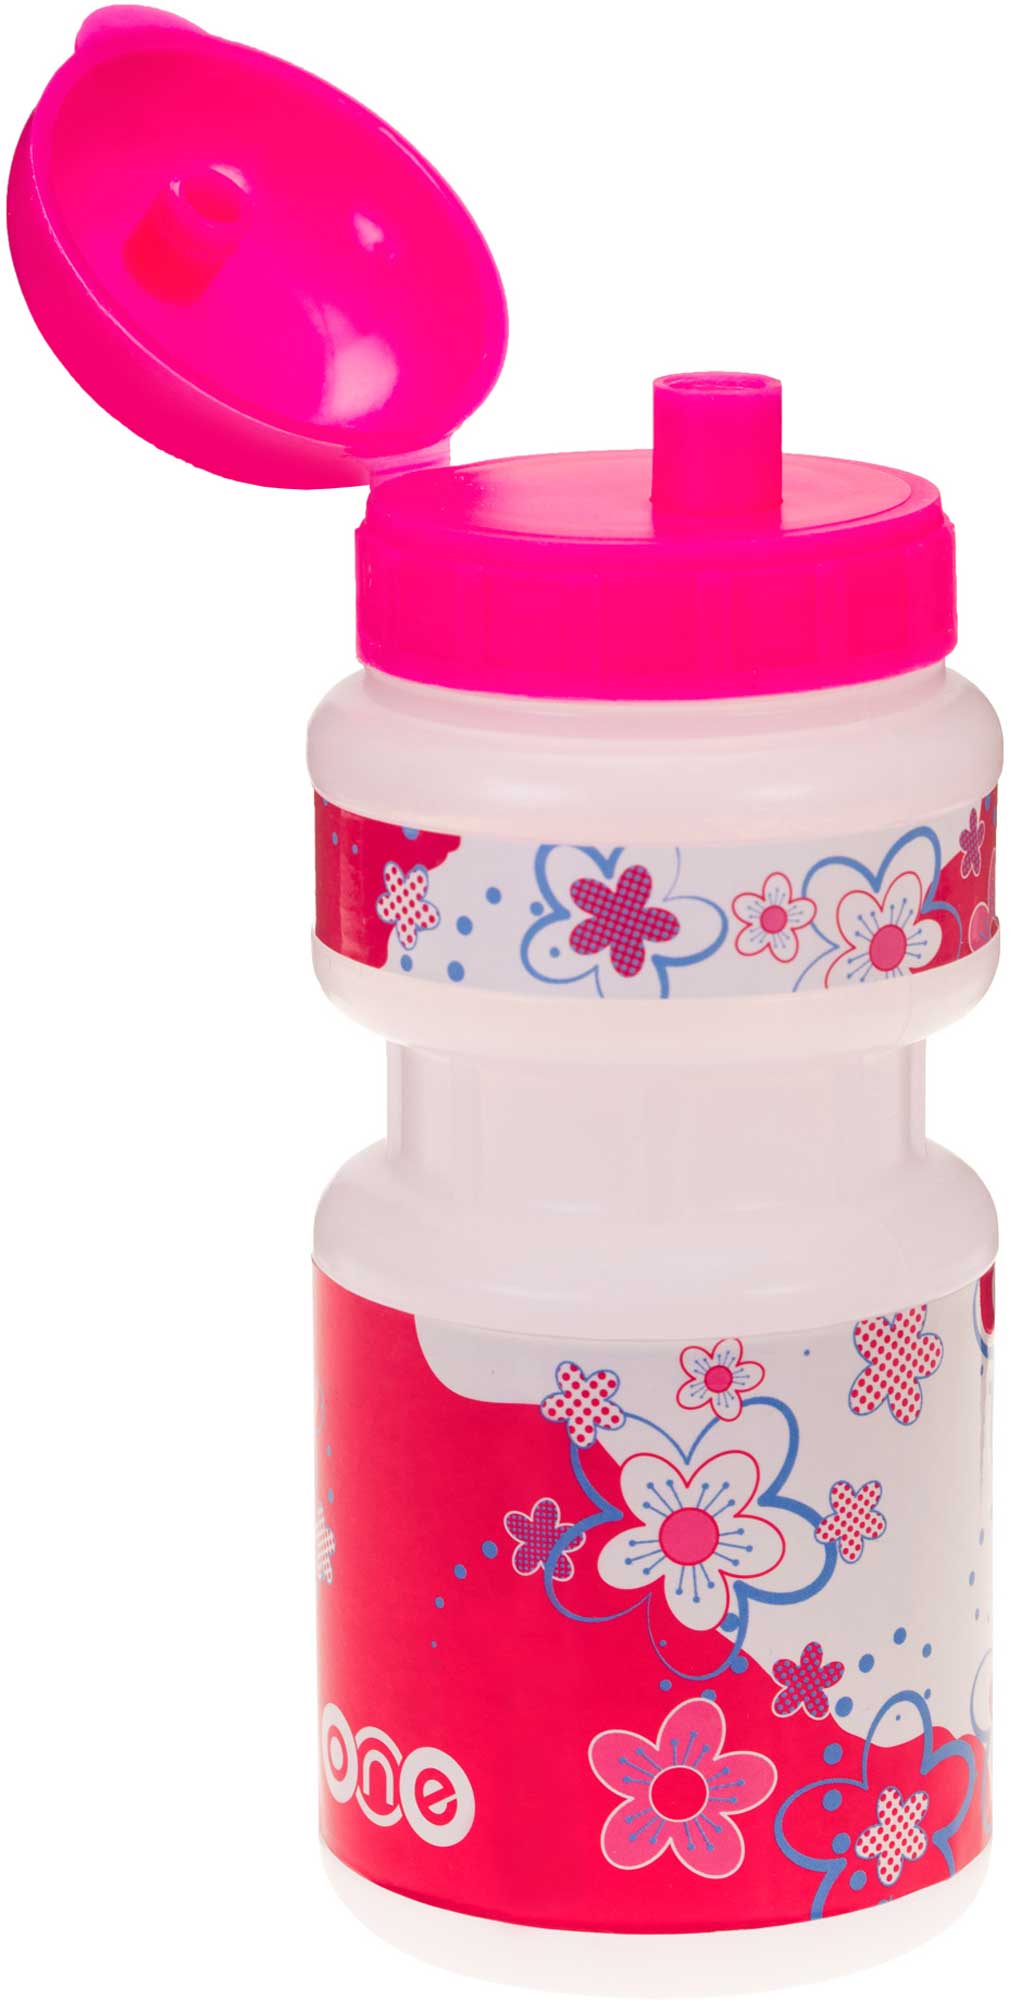 Children's sports water bottle